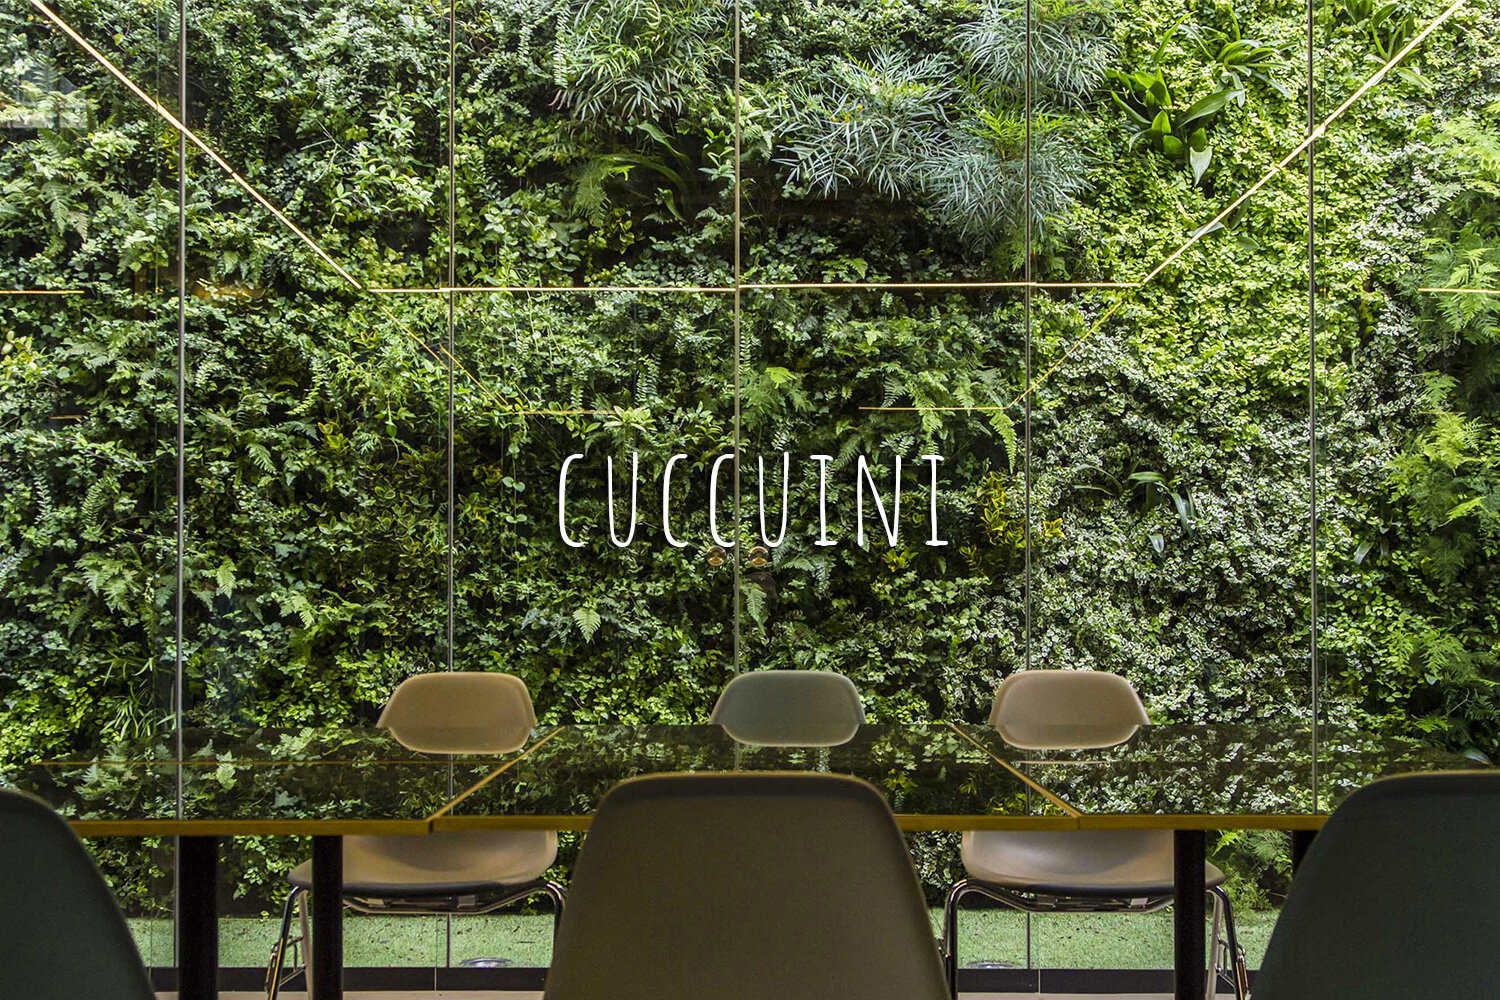 Living Wall, Vertical Garden, Green Wall, Outdoor, Non-residential, Cuccuini, Savona